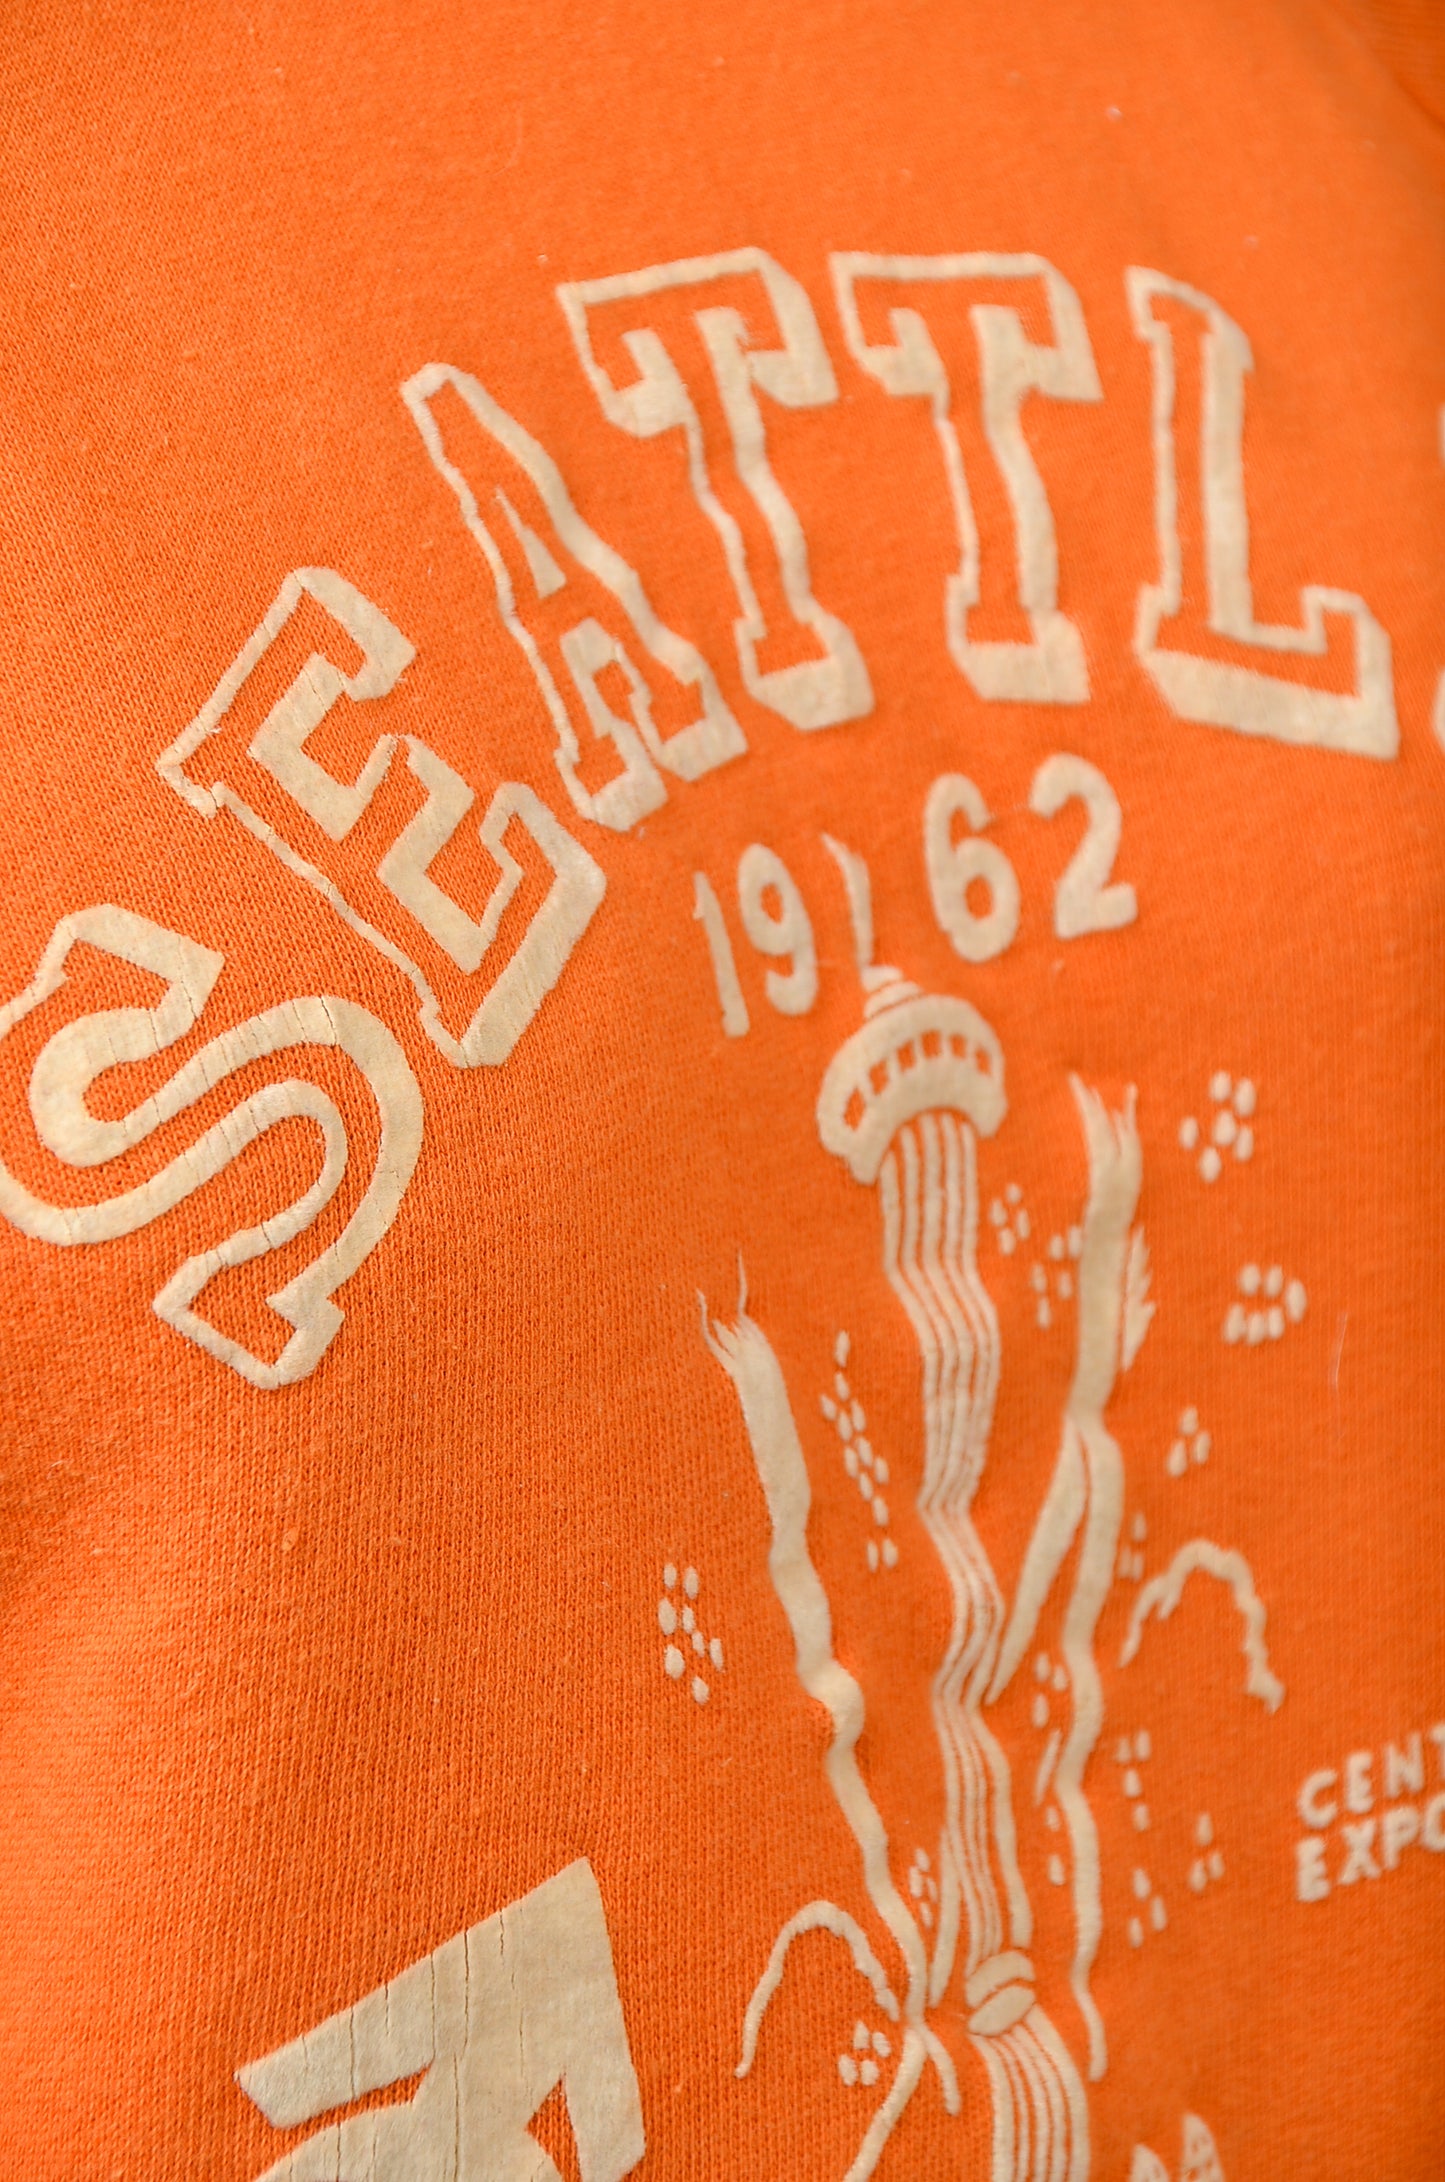 1962 Seattle Worlds Fair Flocked Cotton Sweatshirt